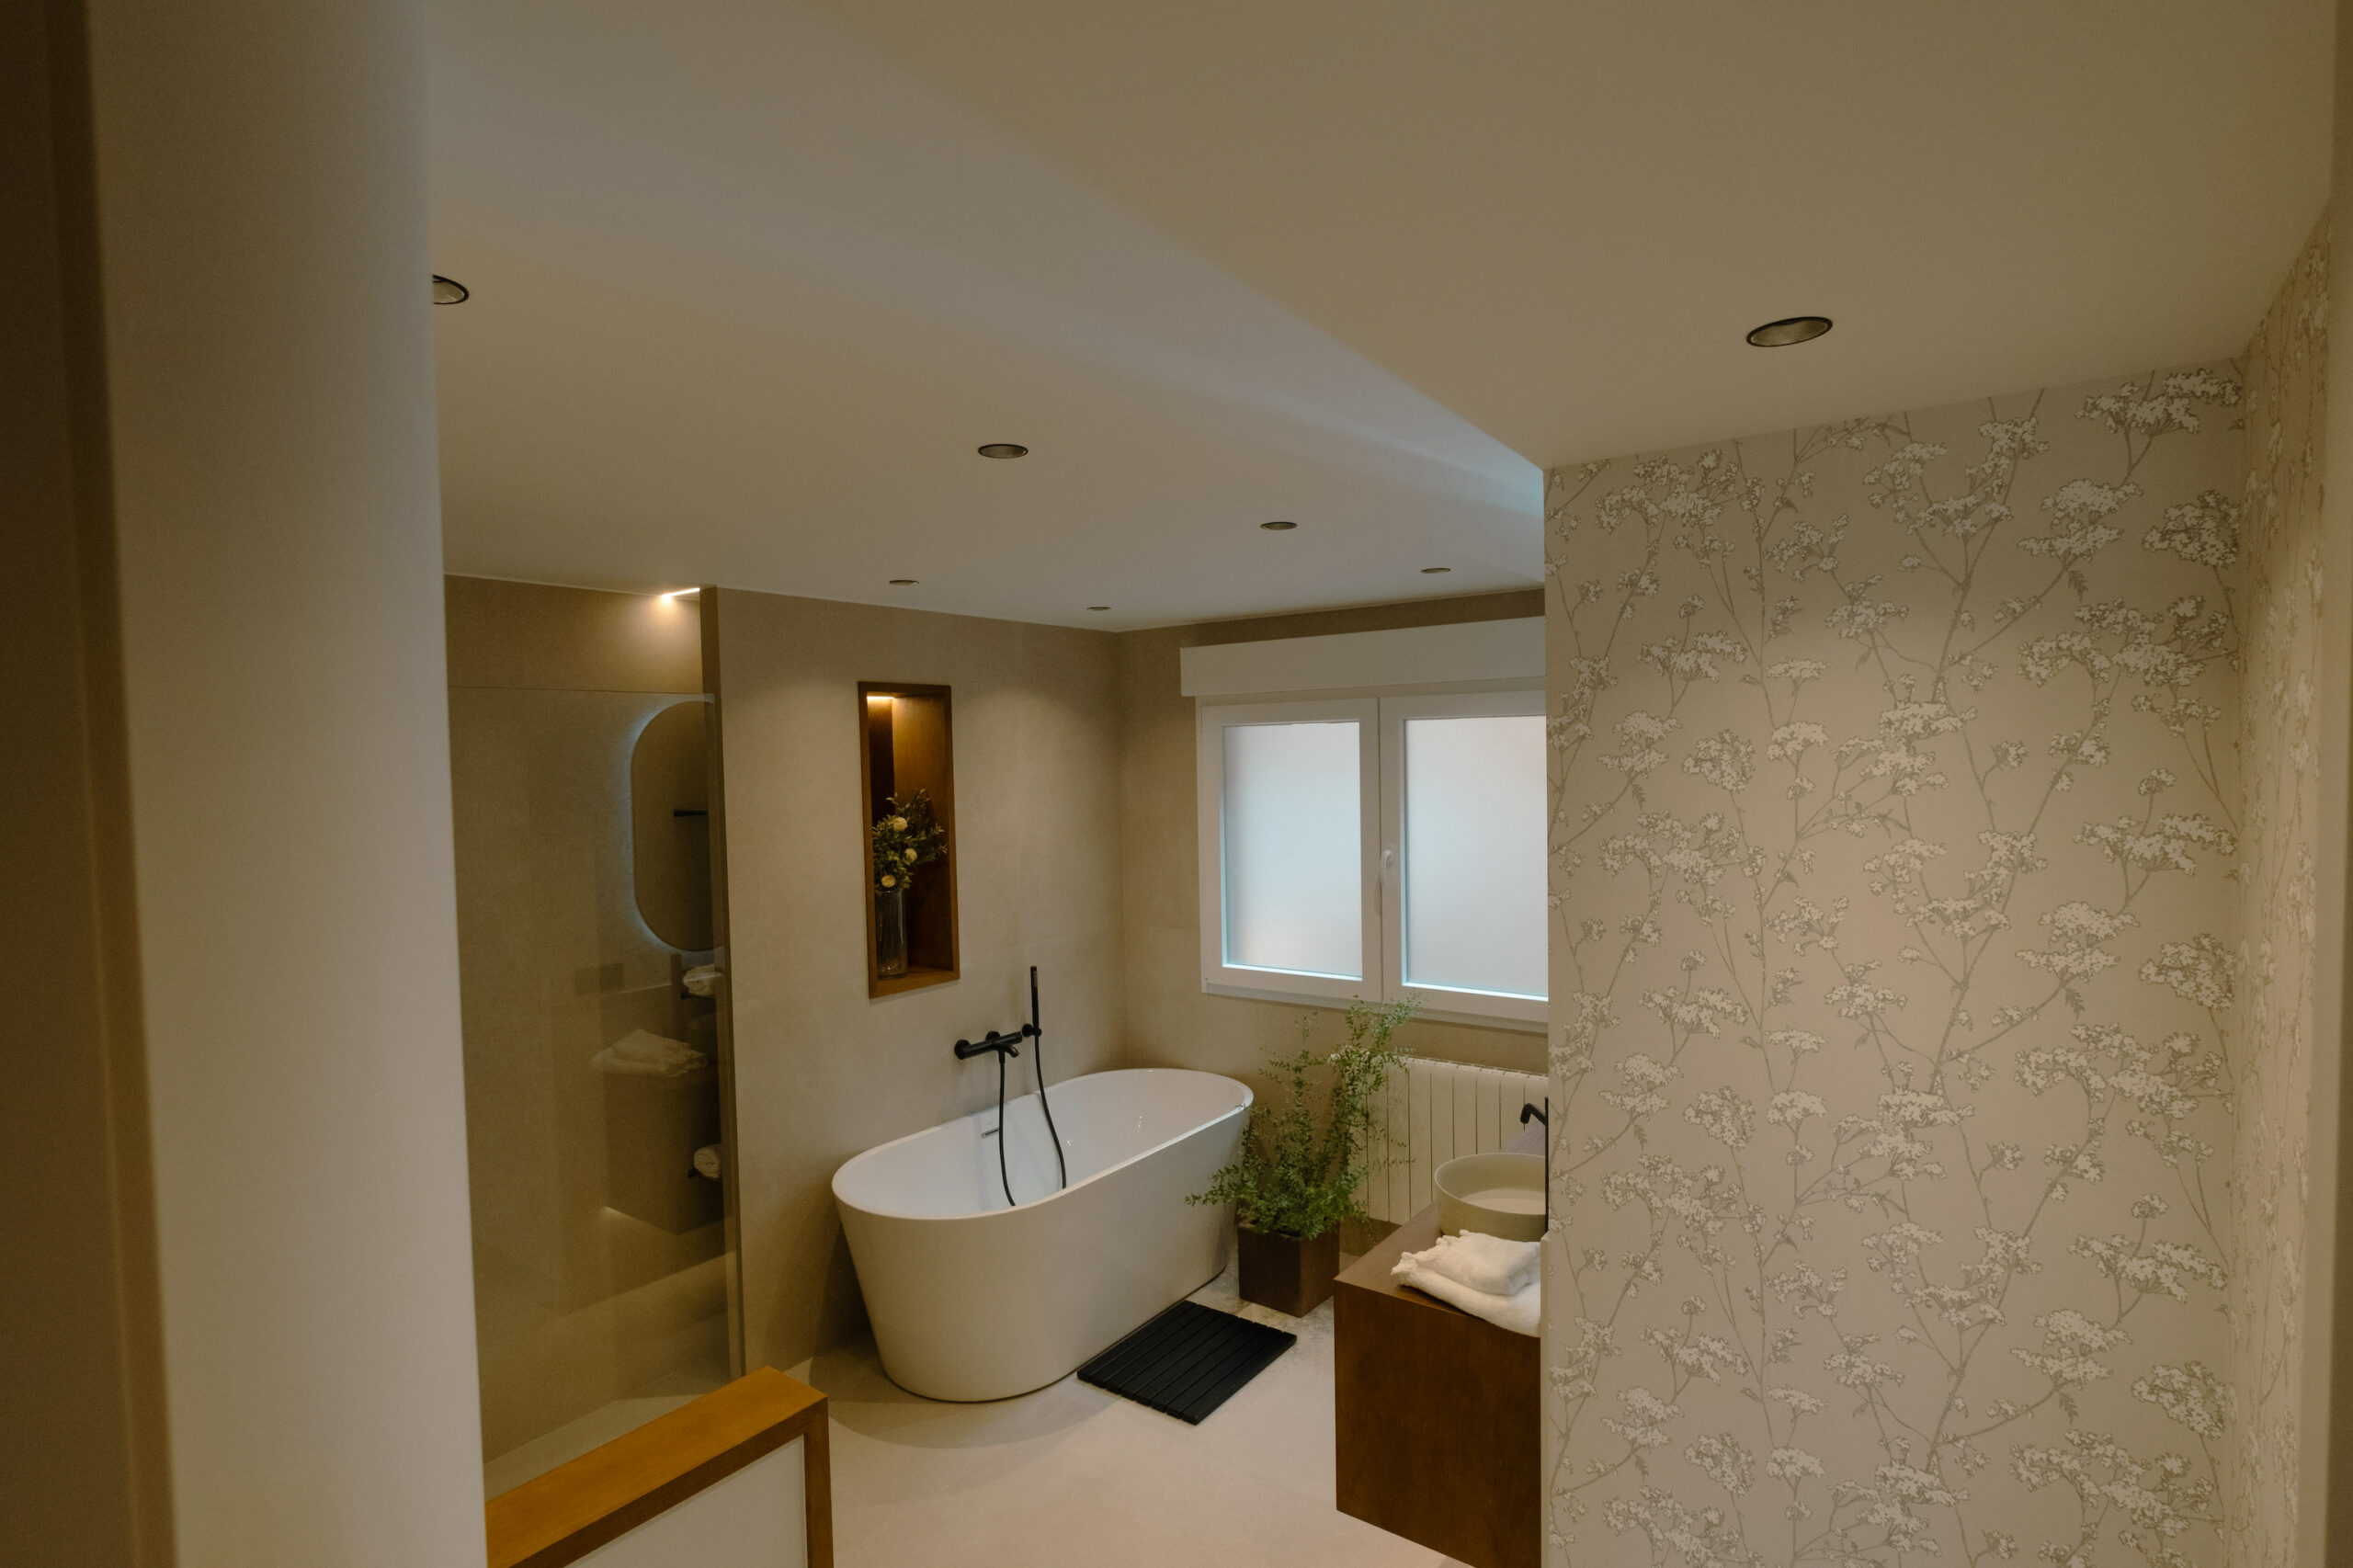 decoracion-baño-principal-moderno-y-minimalista-johntelobusca-cjr